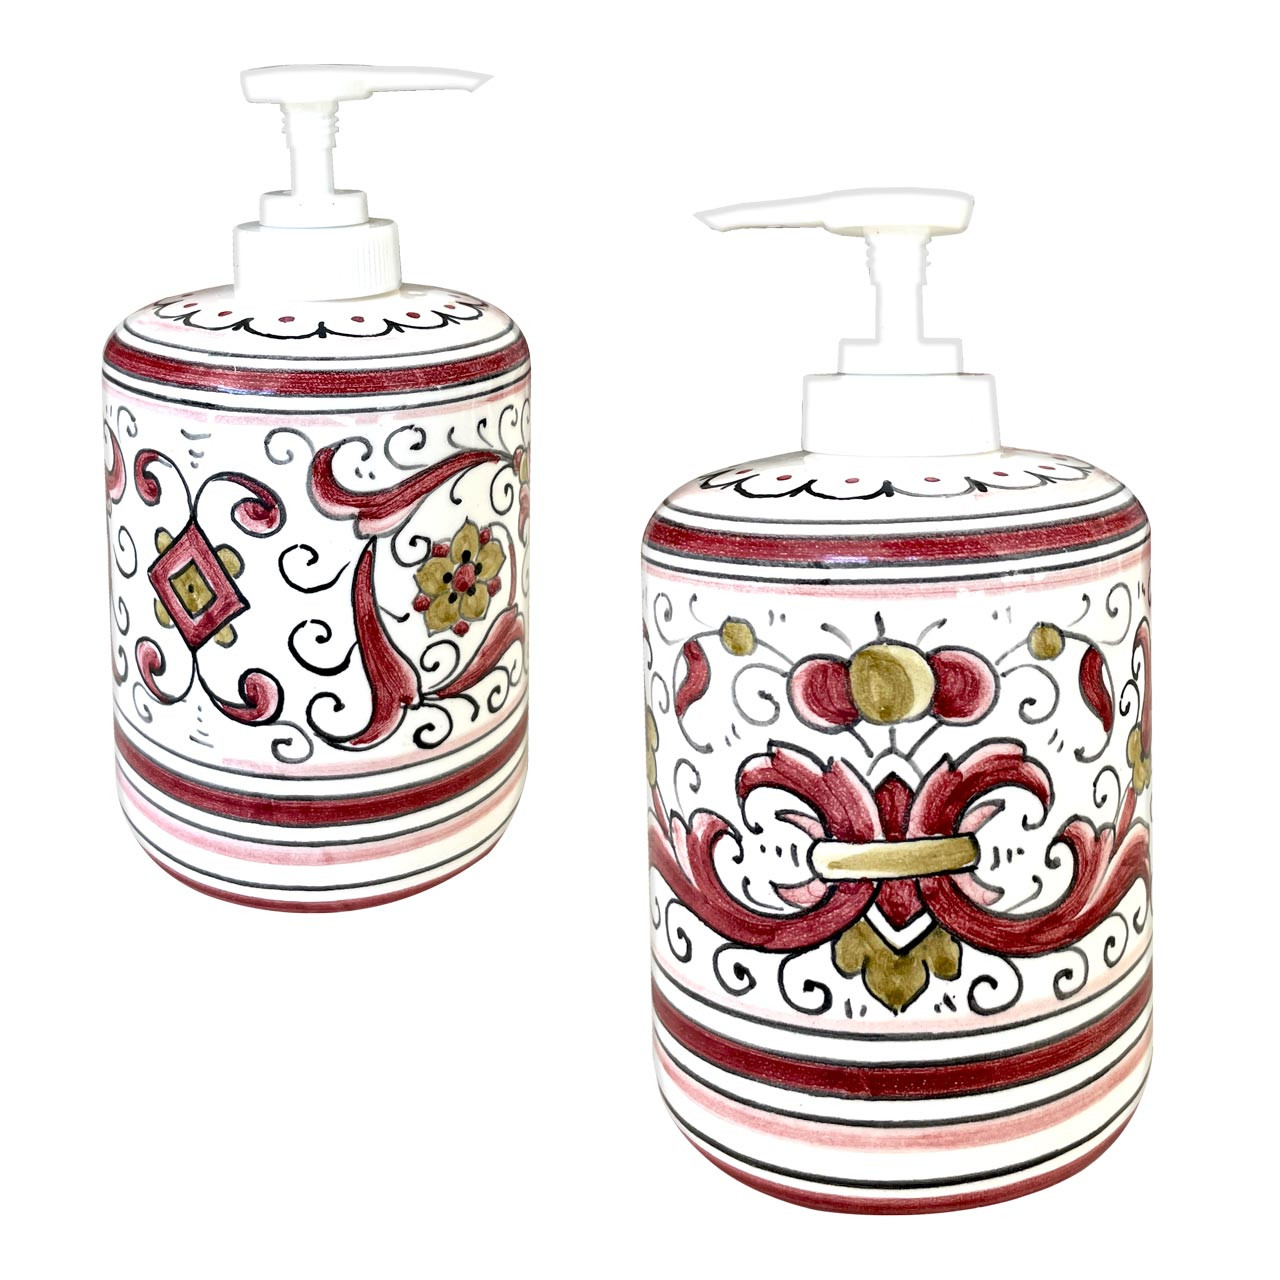 Italian Ceramic Soap Dispenser